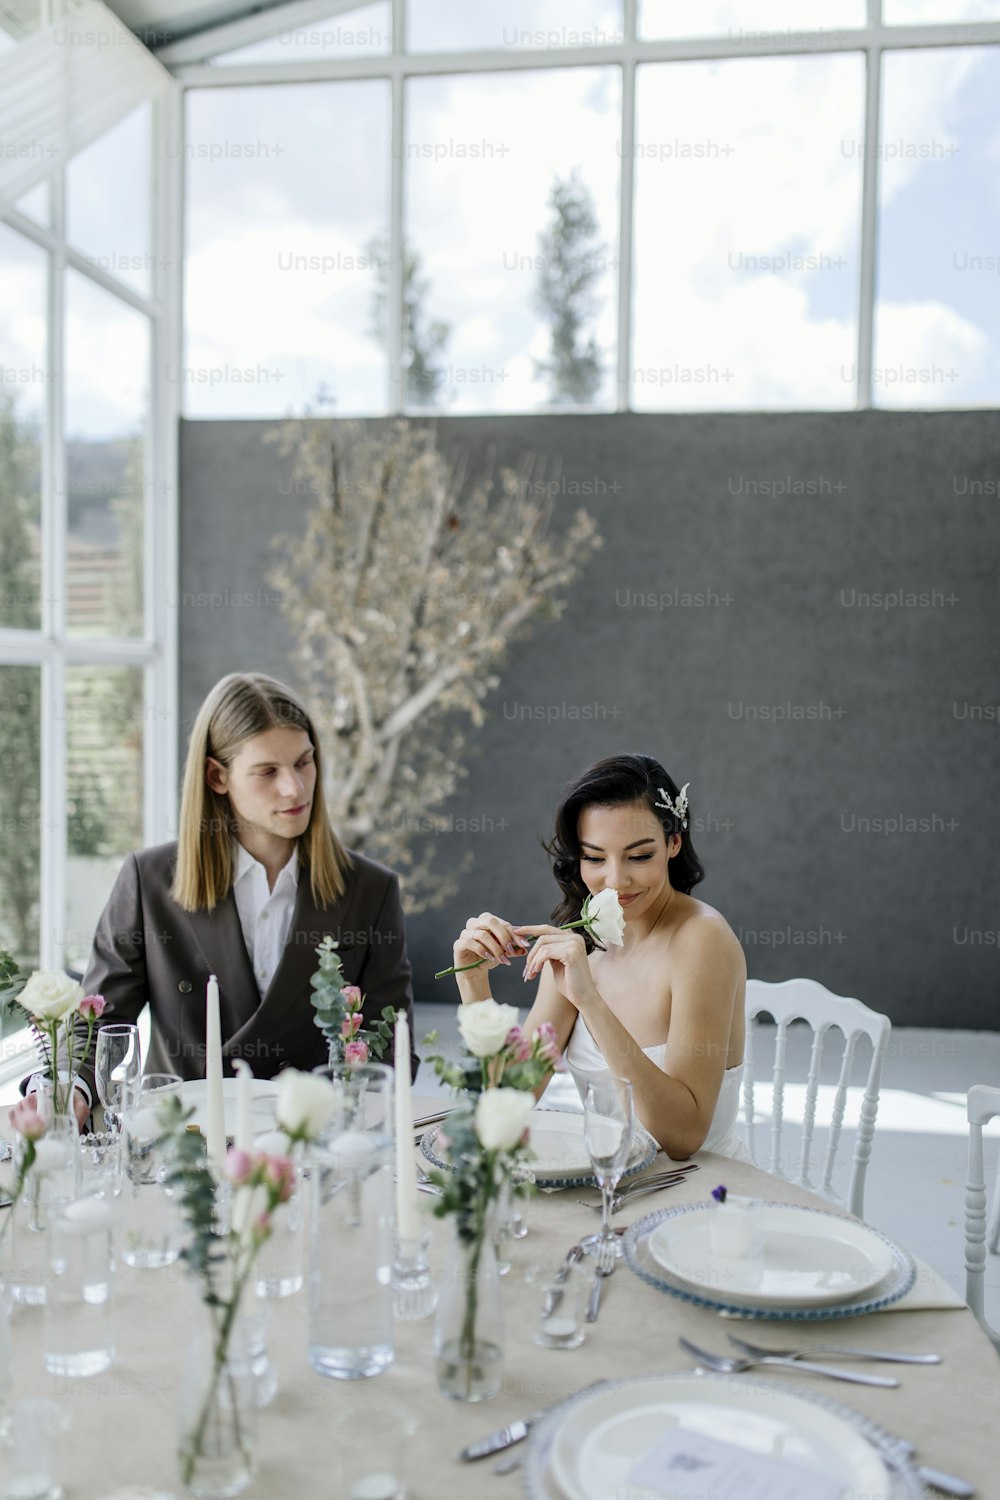 deux femmes assises à une table avec des fleurs dans des vases